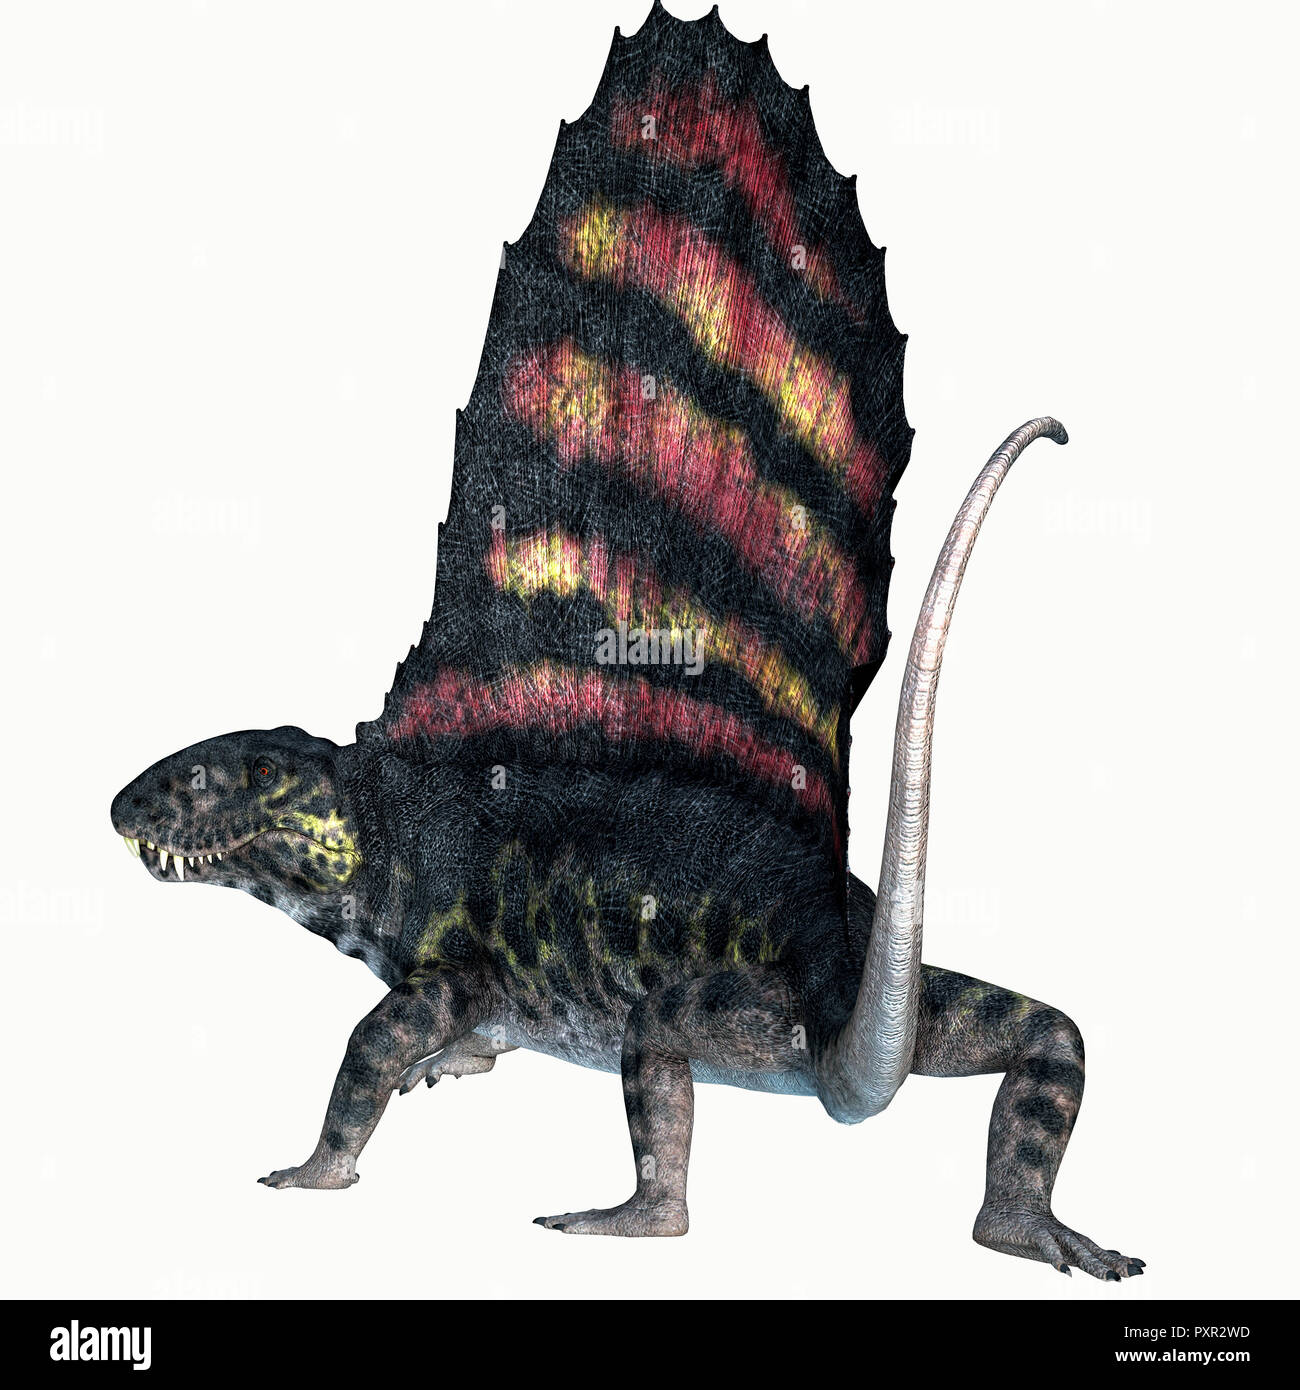 Dimetrodon Permian Reptile Schwanz - dimetrodon war ein Segel - Zurück fleischfressenden Dinosaurier, die in Nordamerika und Europa während der Permian Periode lebte. Stockfoto